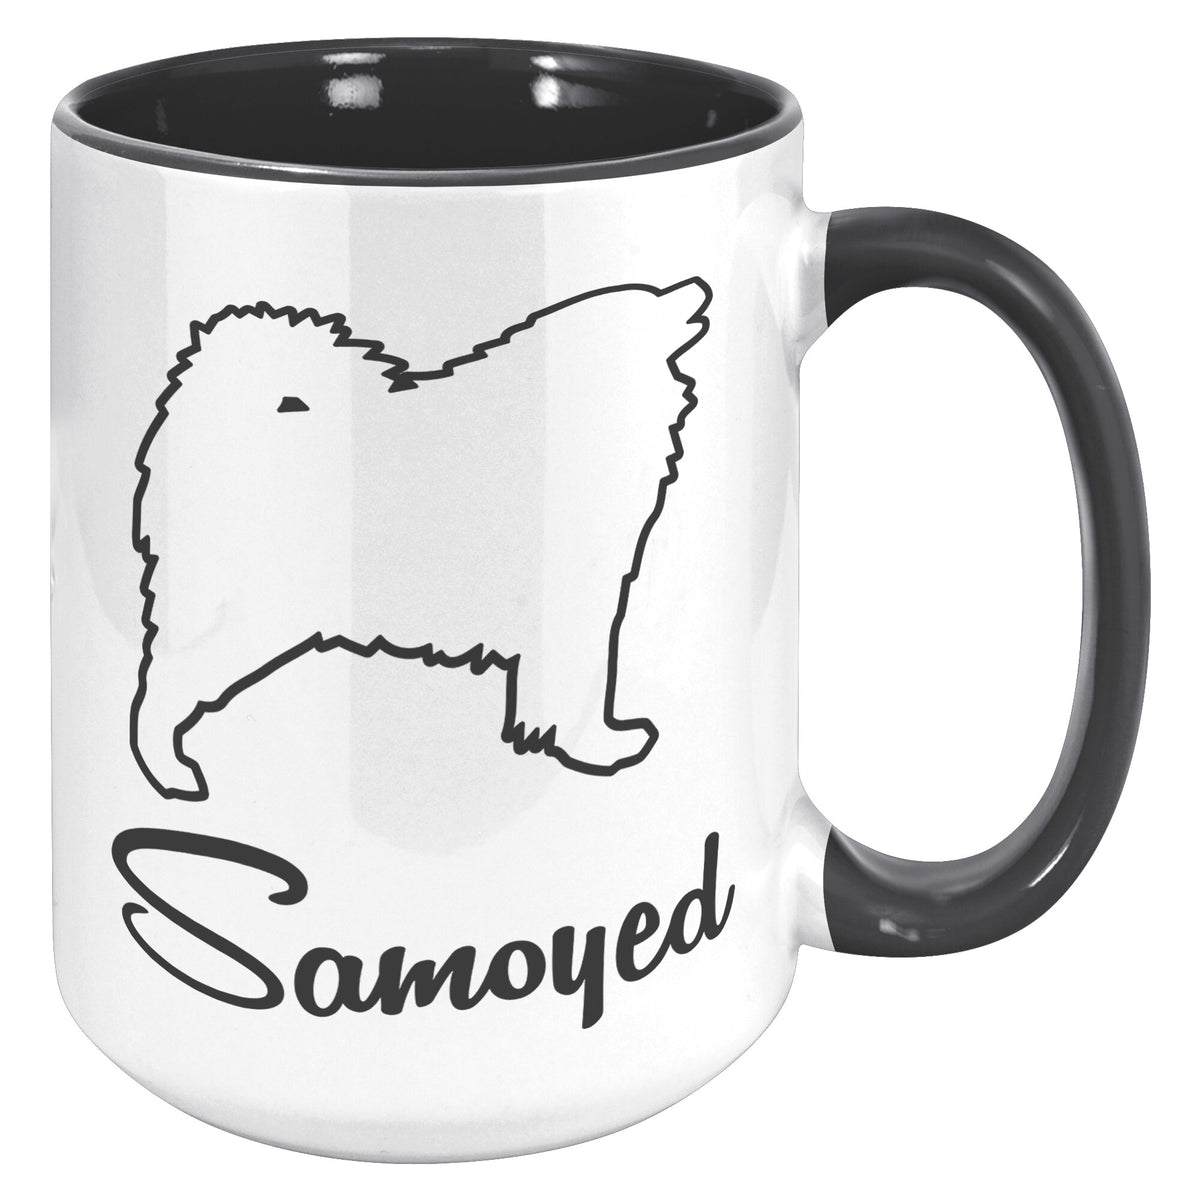 Samoyed Dishwasher Safe Microwavable Ceramic Coffee Mug 15 oz., 1